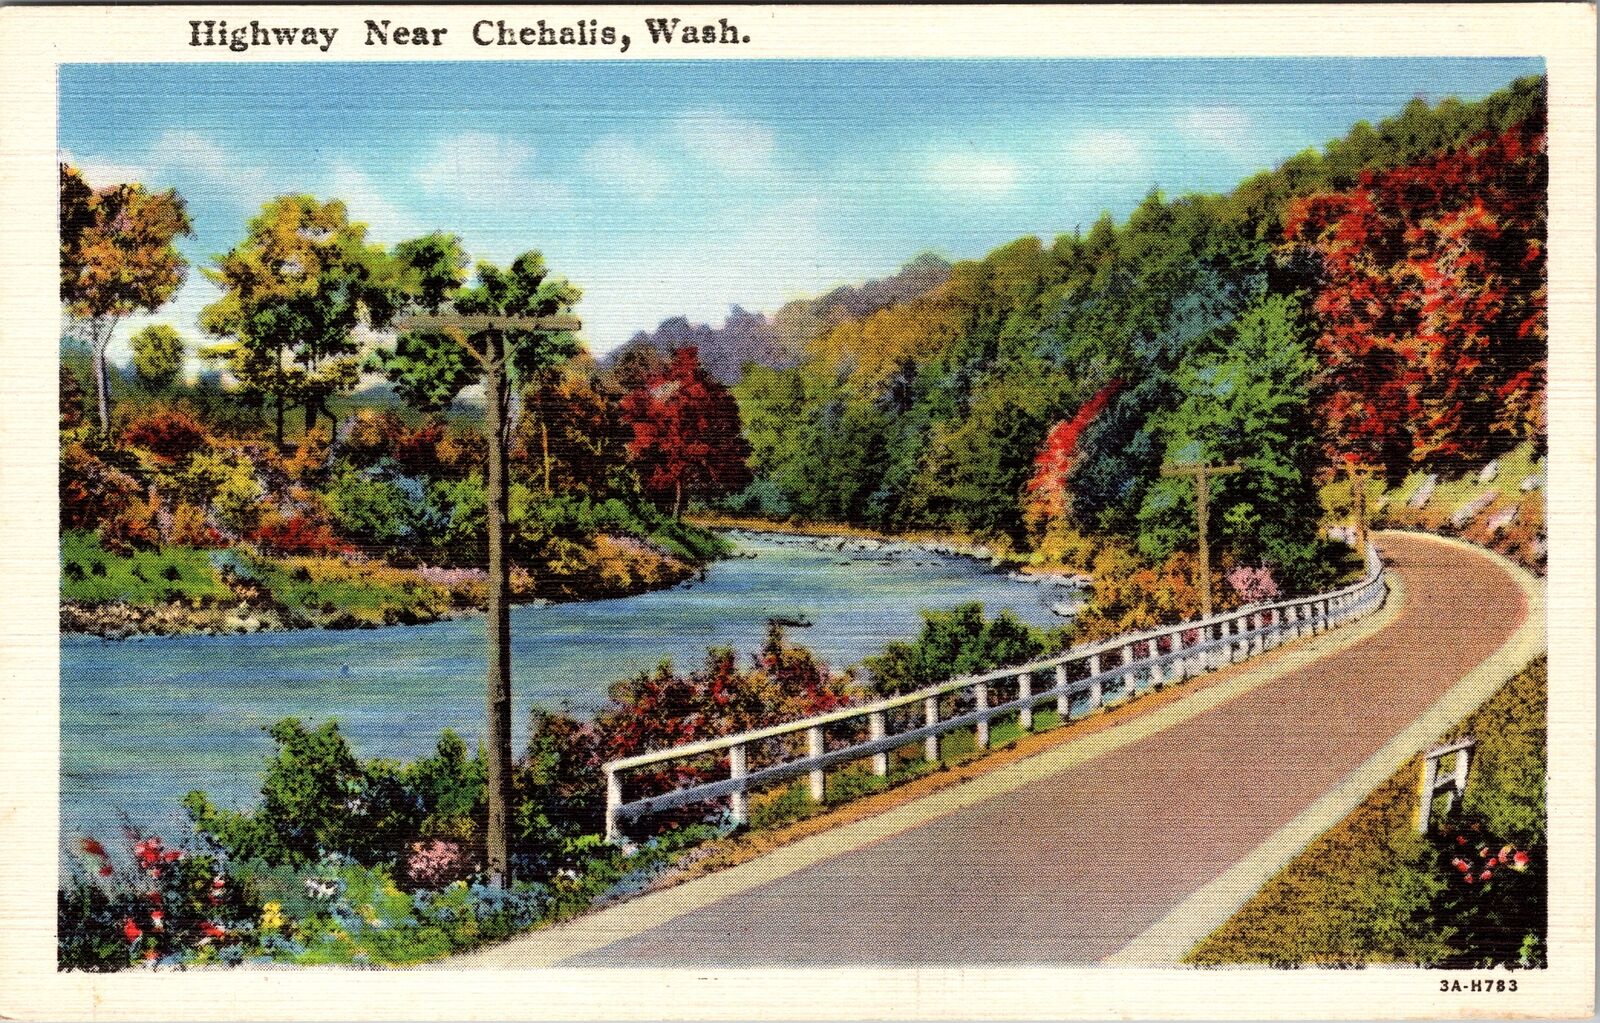 Chehalis WA-Washington, Highway, Scenic View, Vintage Postcard